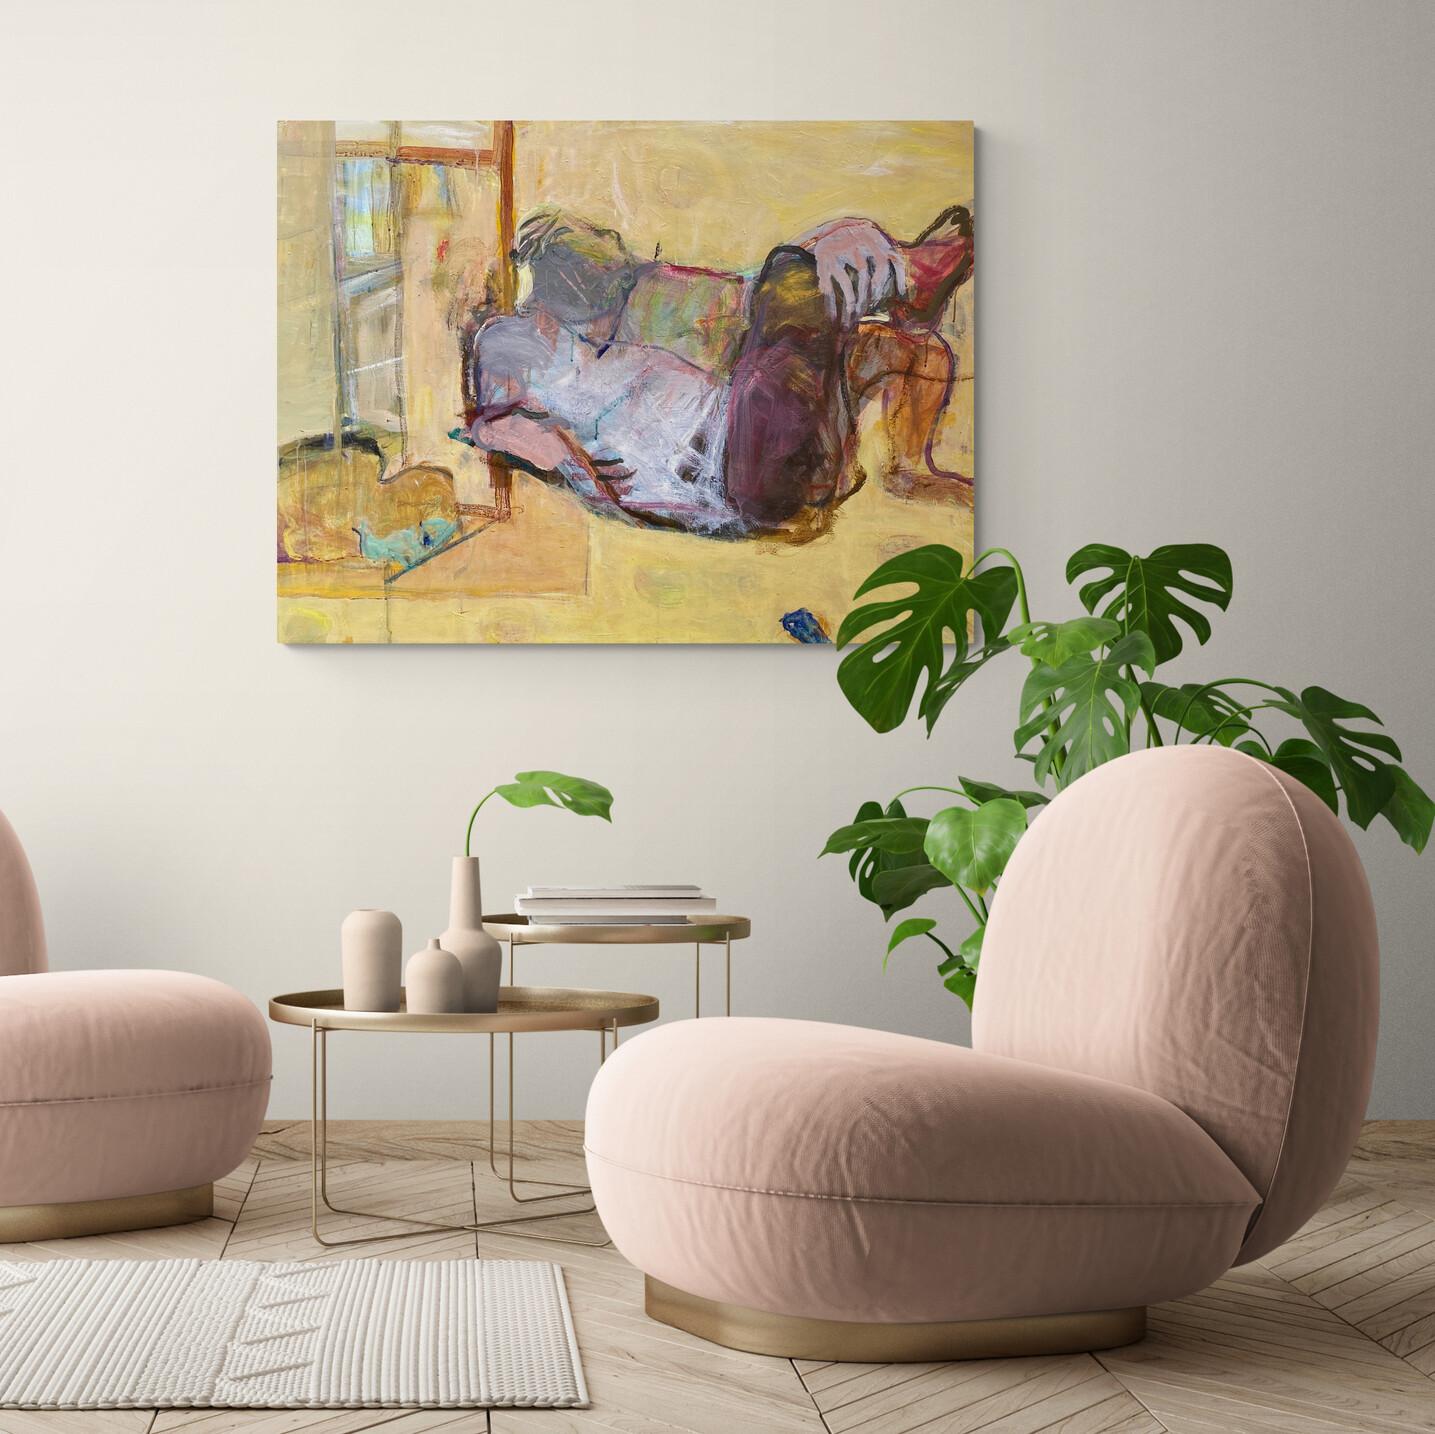 Pastellgelbes expressionistisches, abstraktes, figuratives Gemälde auf Leinwand – Painting von Ilana Seati